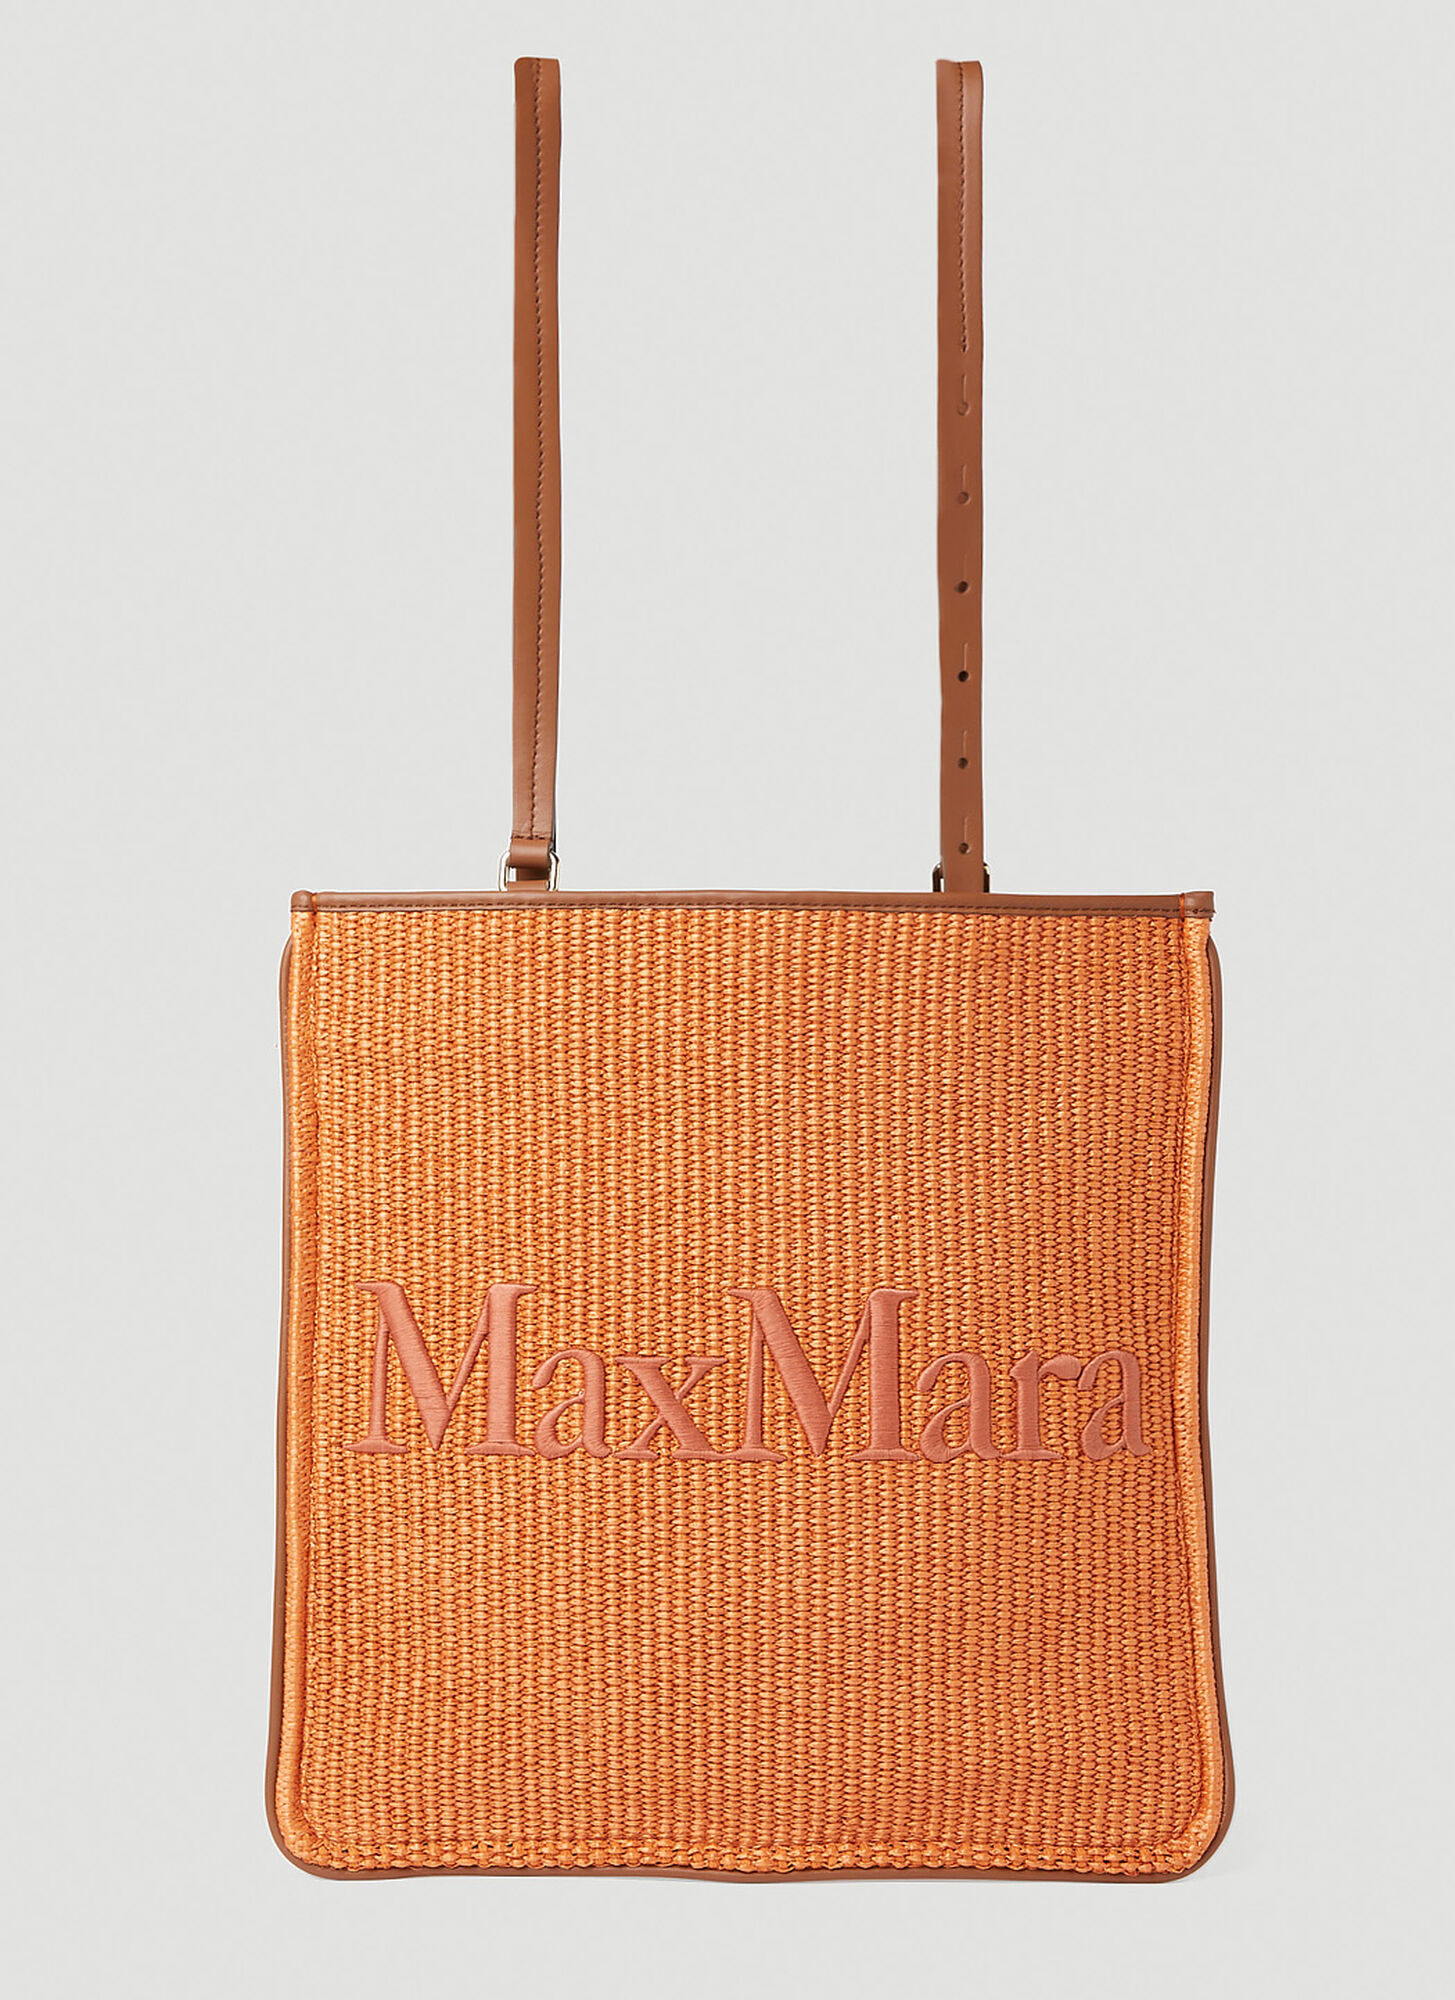 Max Mara Easybag Tote Bag In Orange